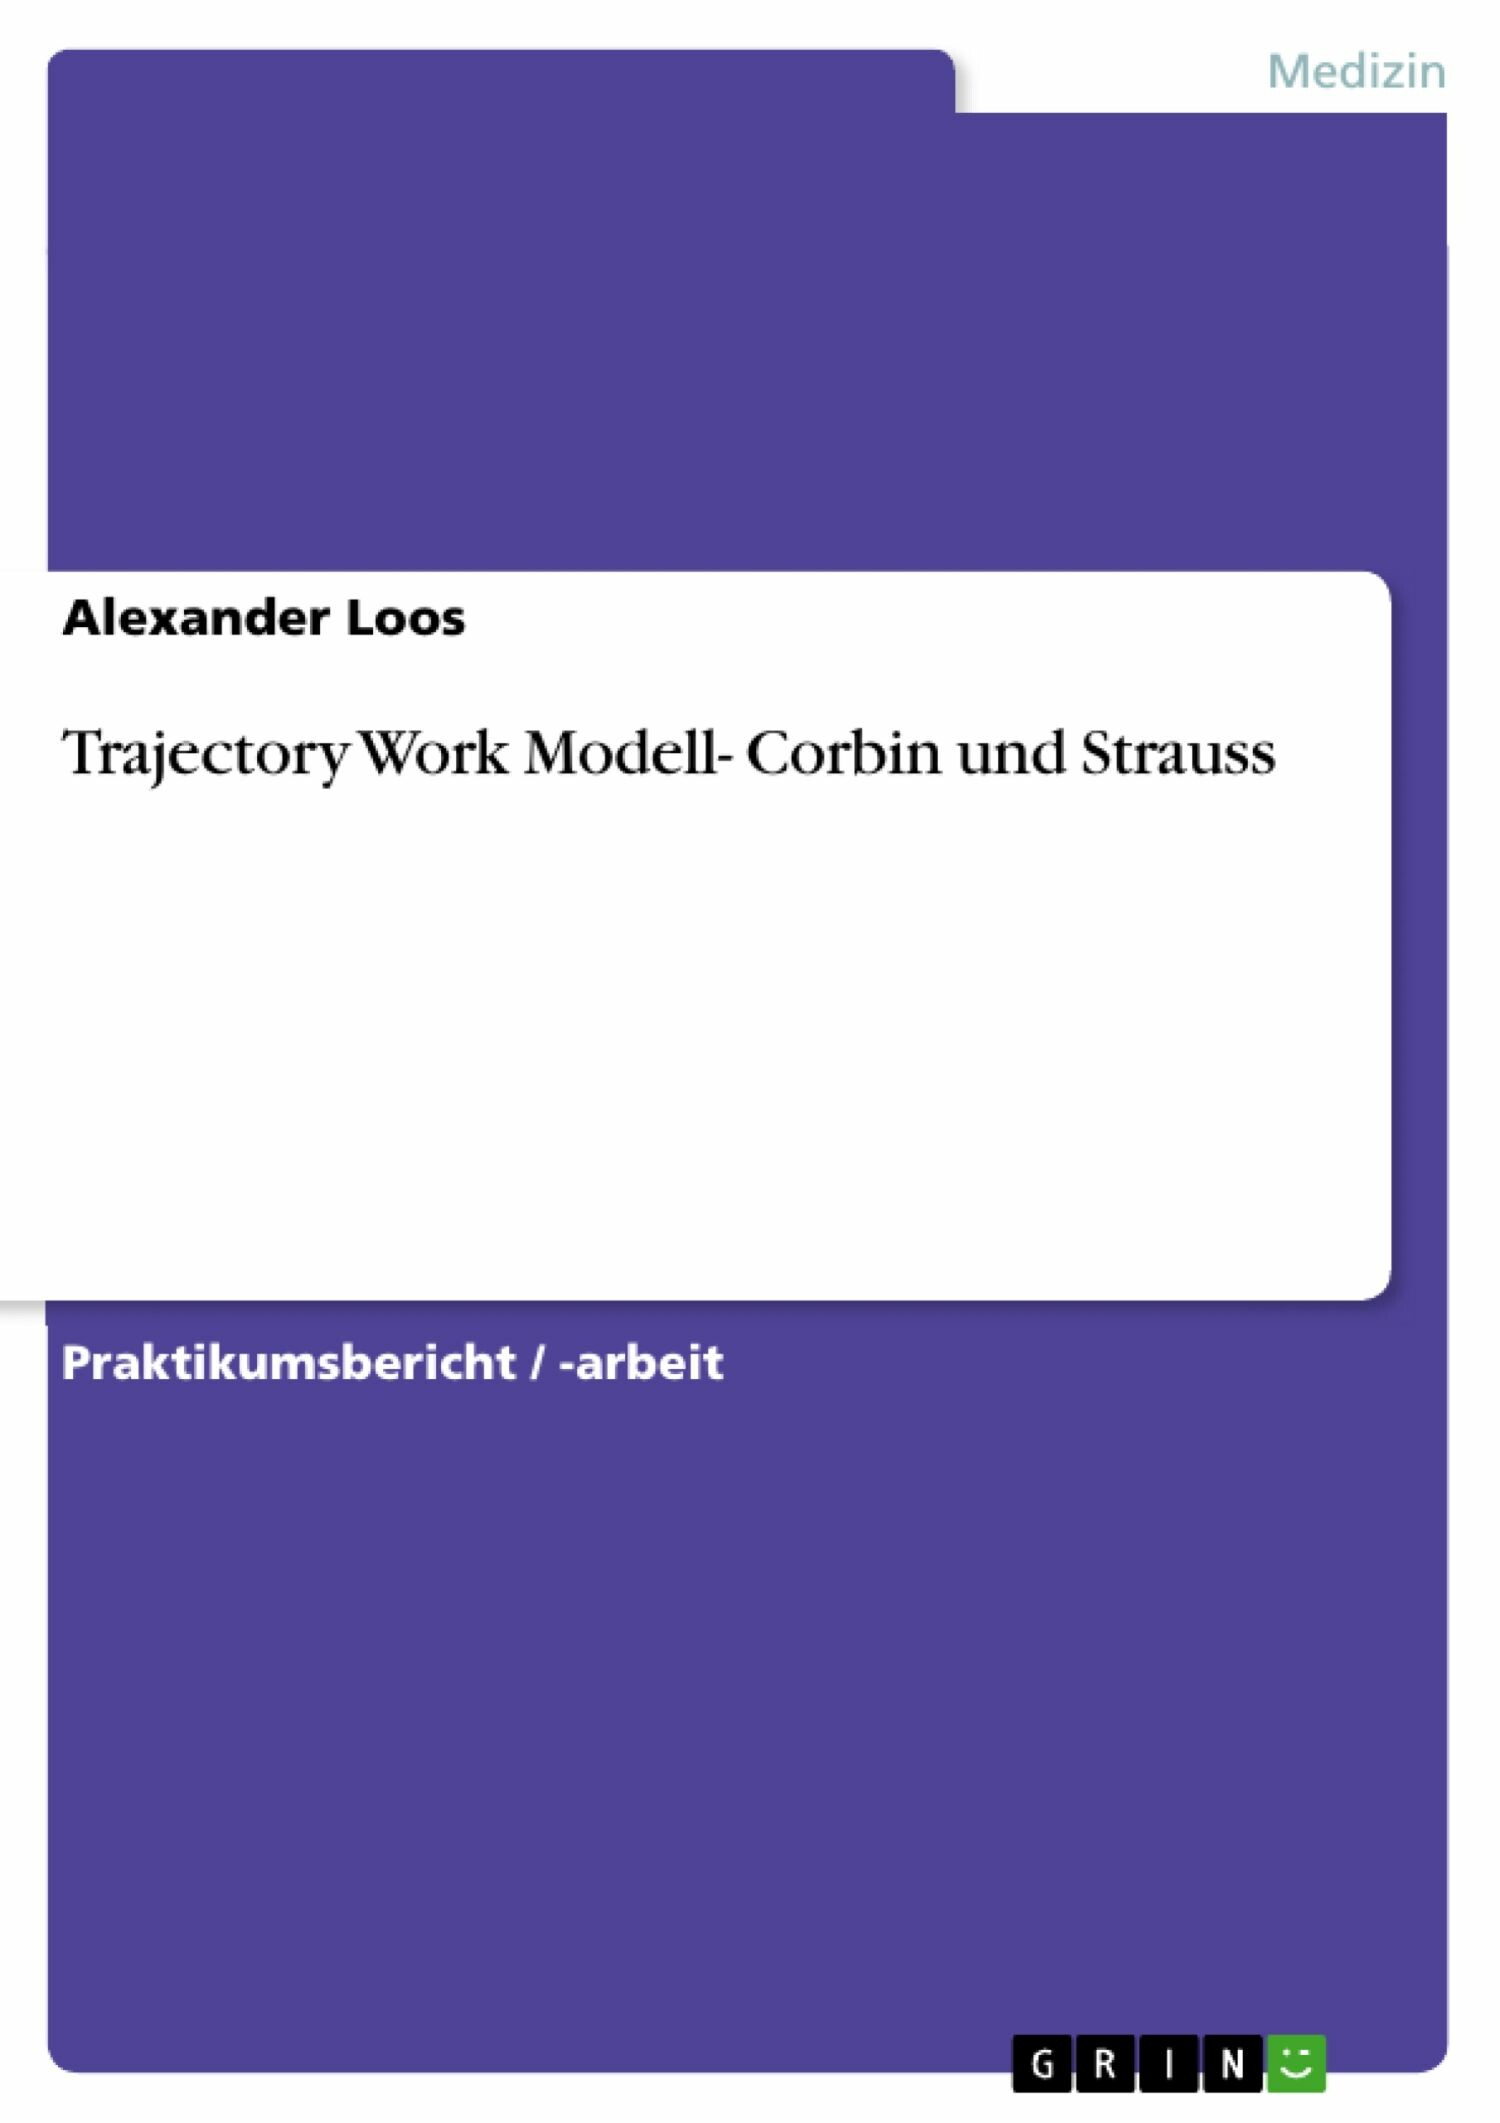 Trajectory Work Modell- Corbin und Strauss